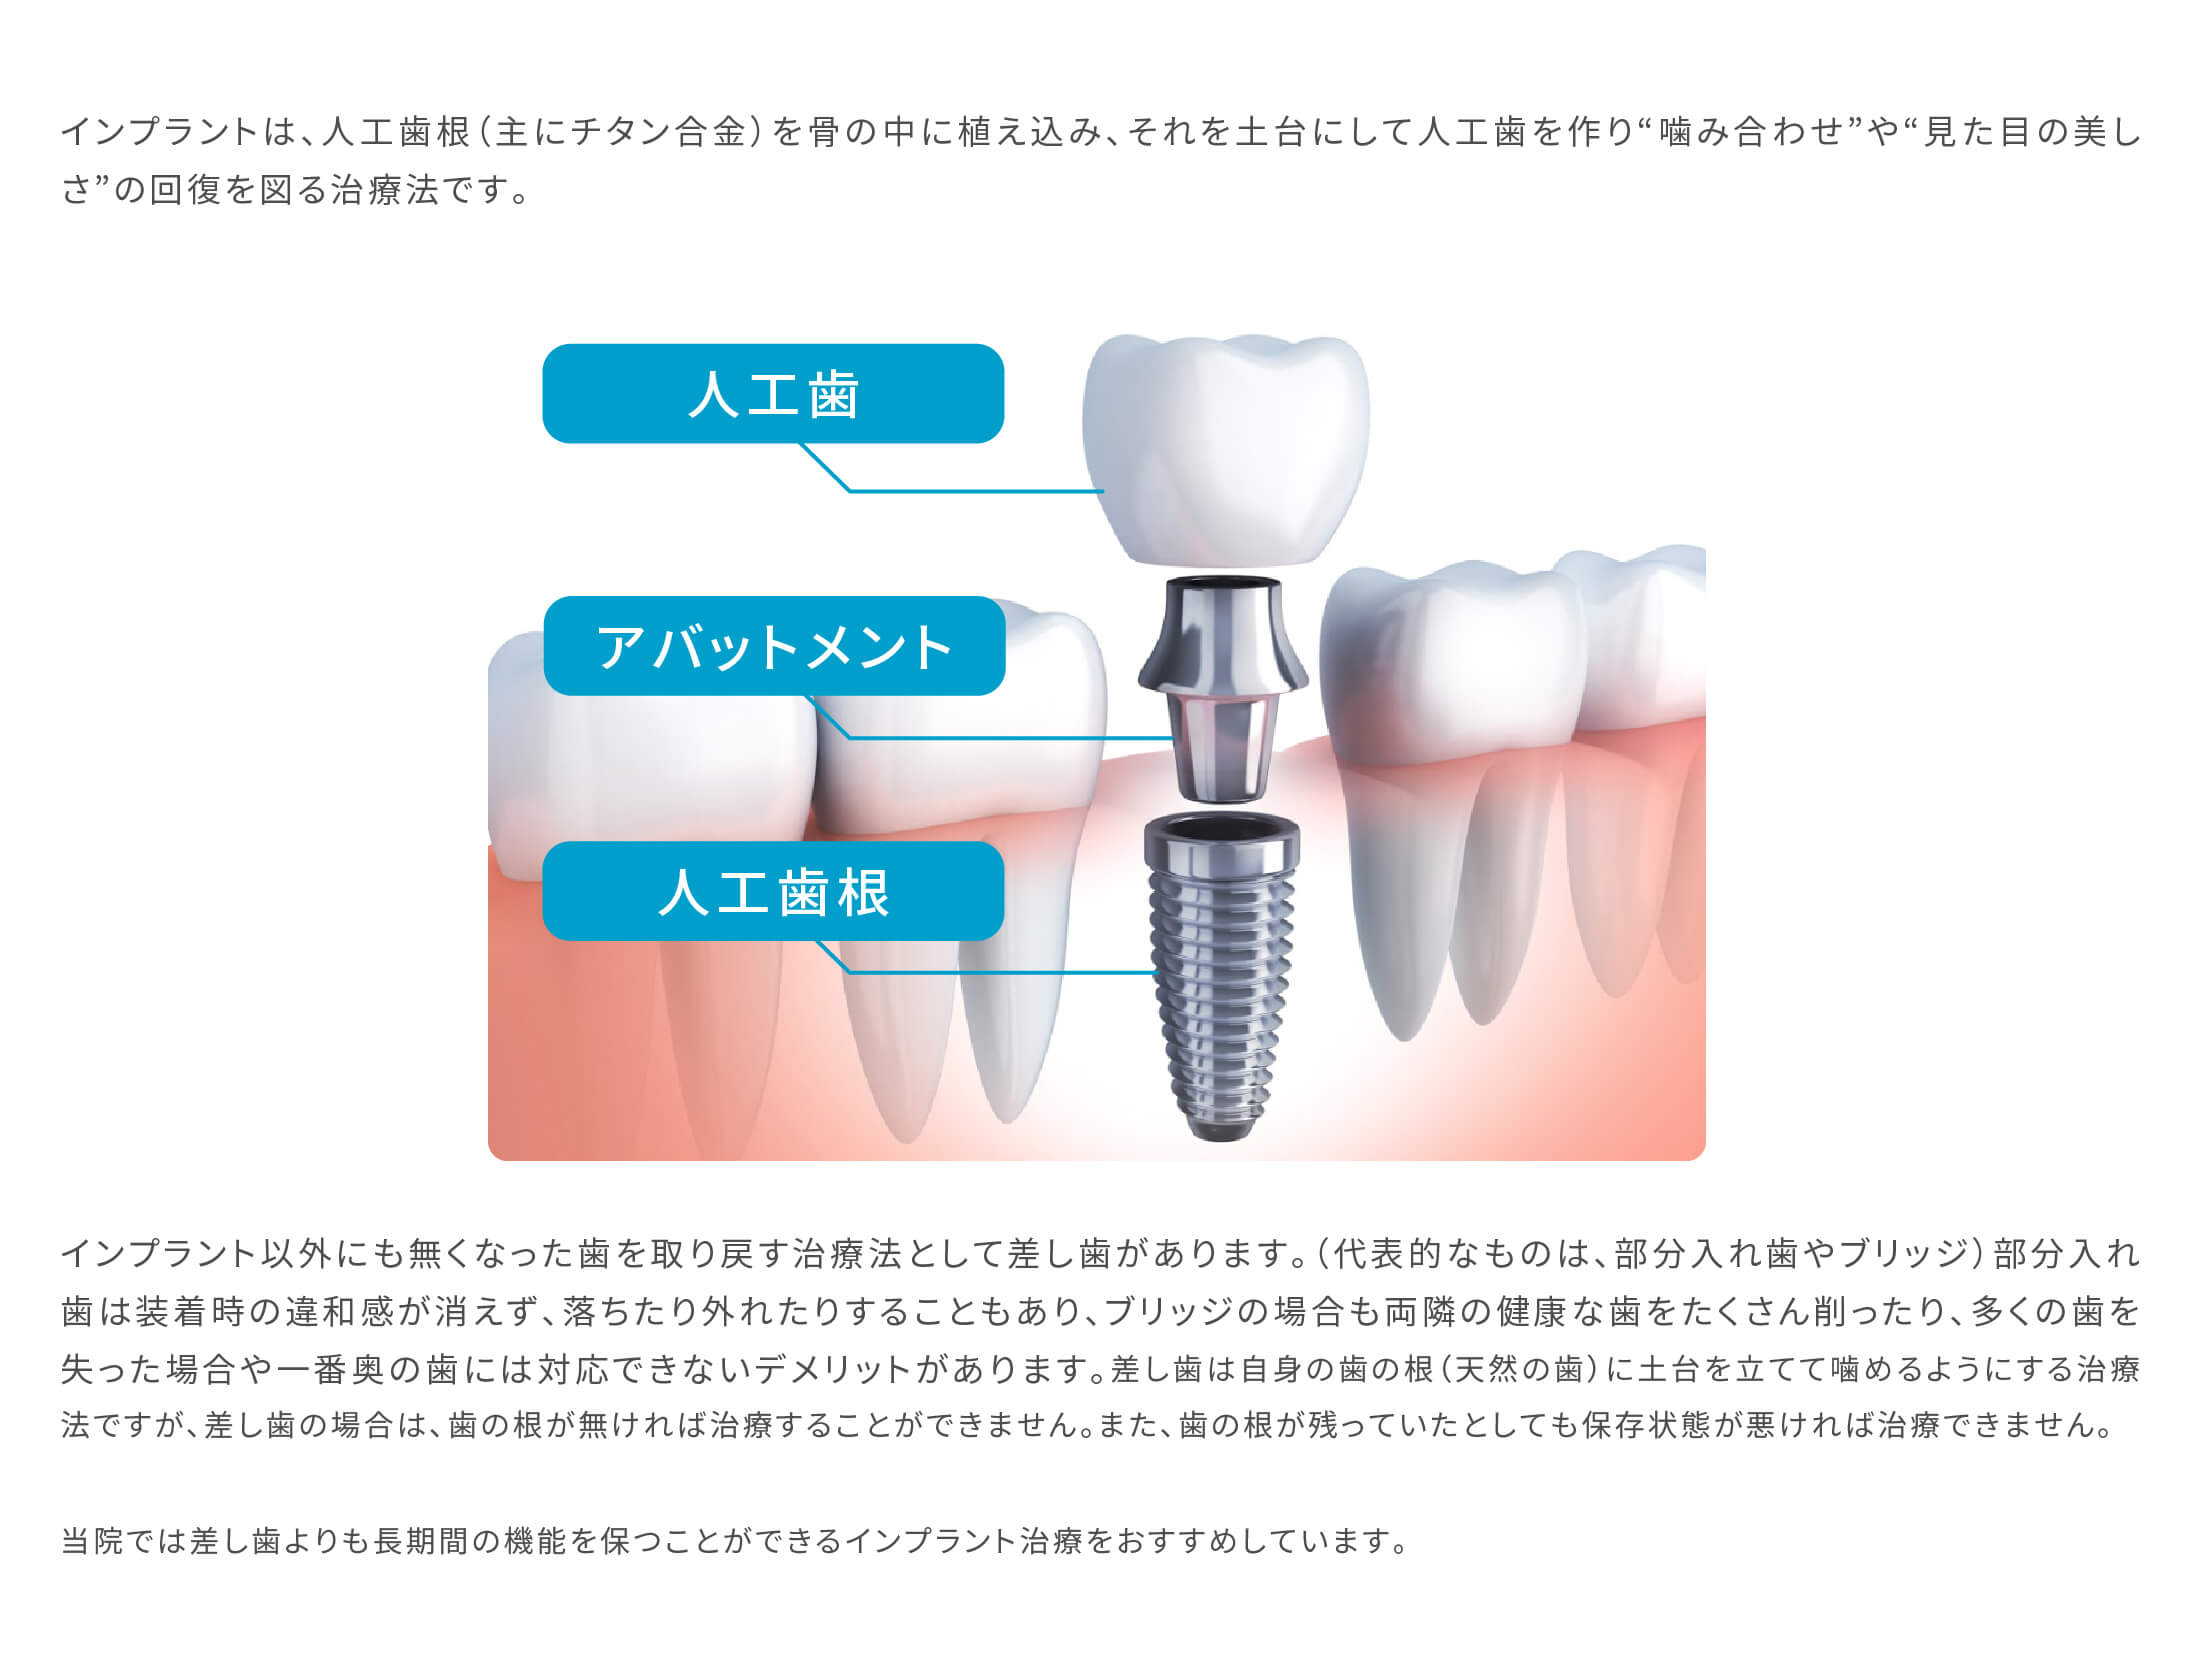 インプラントは、人工歯根（主にチタン合金）を骨の中に植え込み、それを土台にして人工歯を作り“咬み合わせ”や“見た目の美しさ”の回復を図る治療法です。